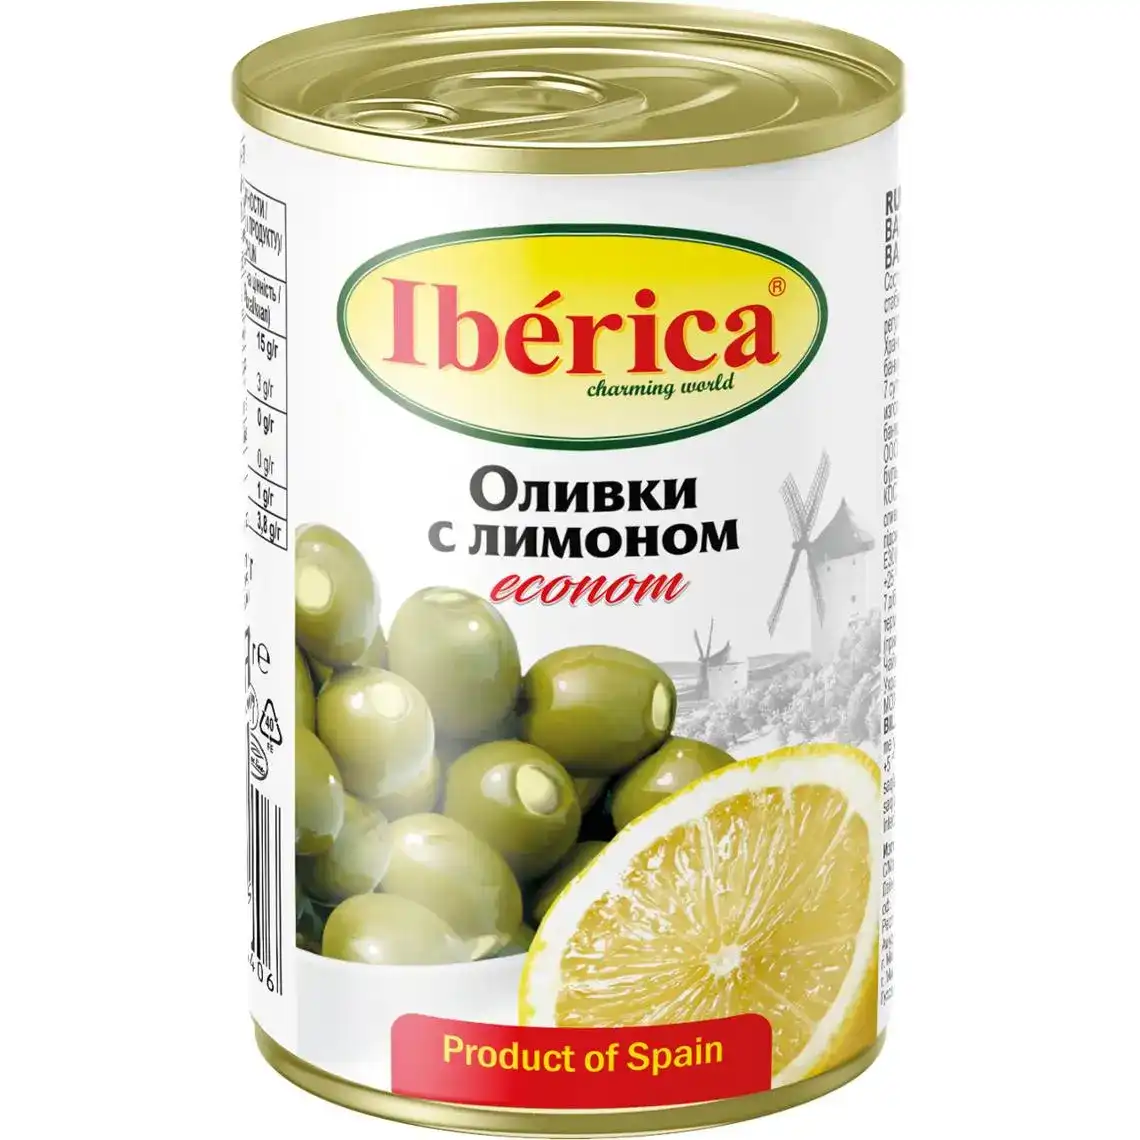 Оливки Iberica фаршированные лимоном 280 г